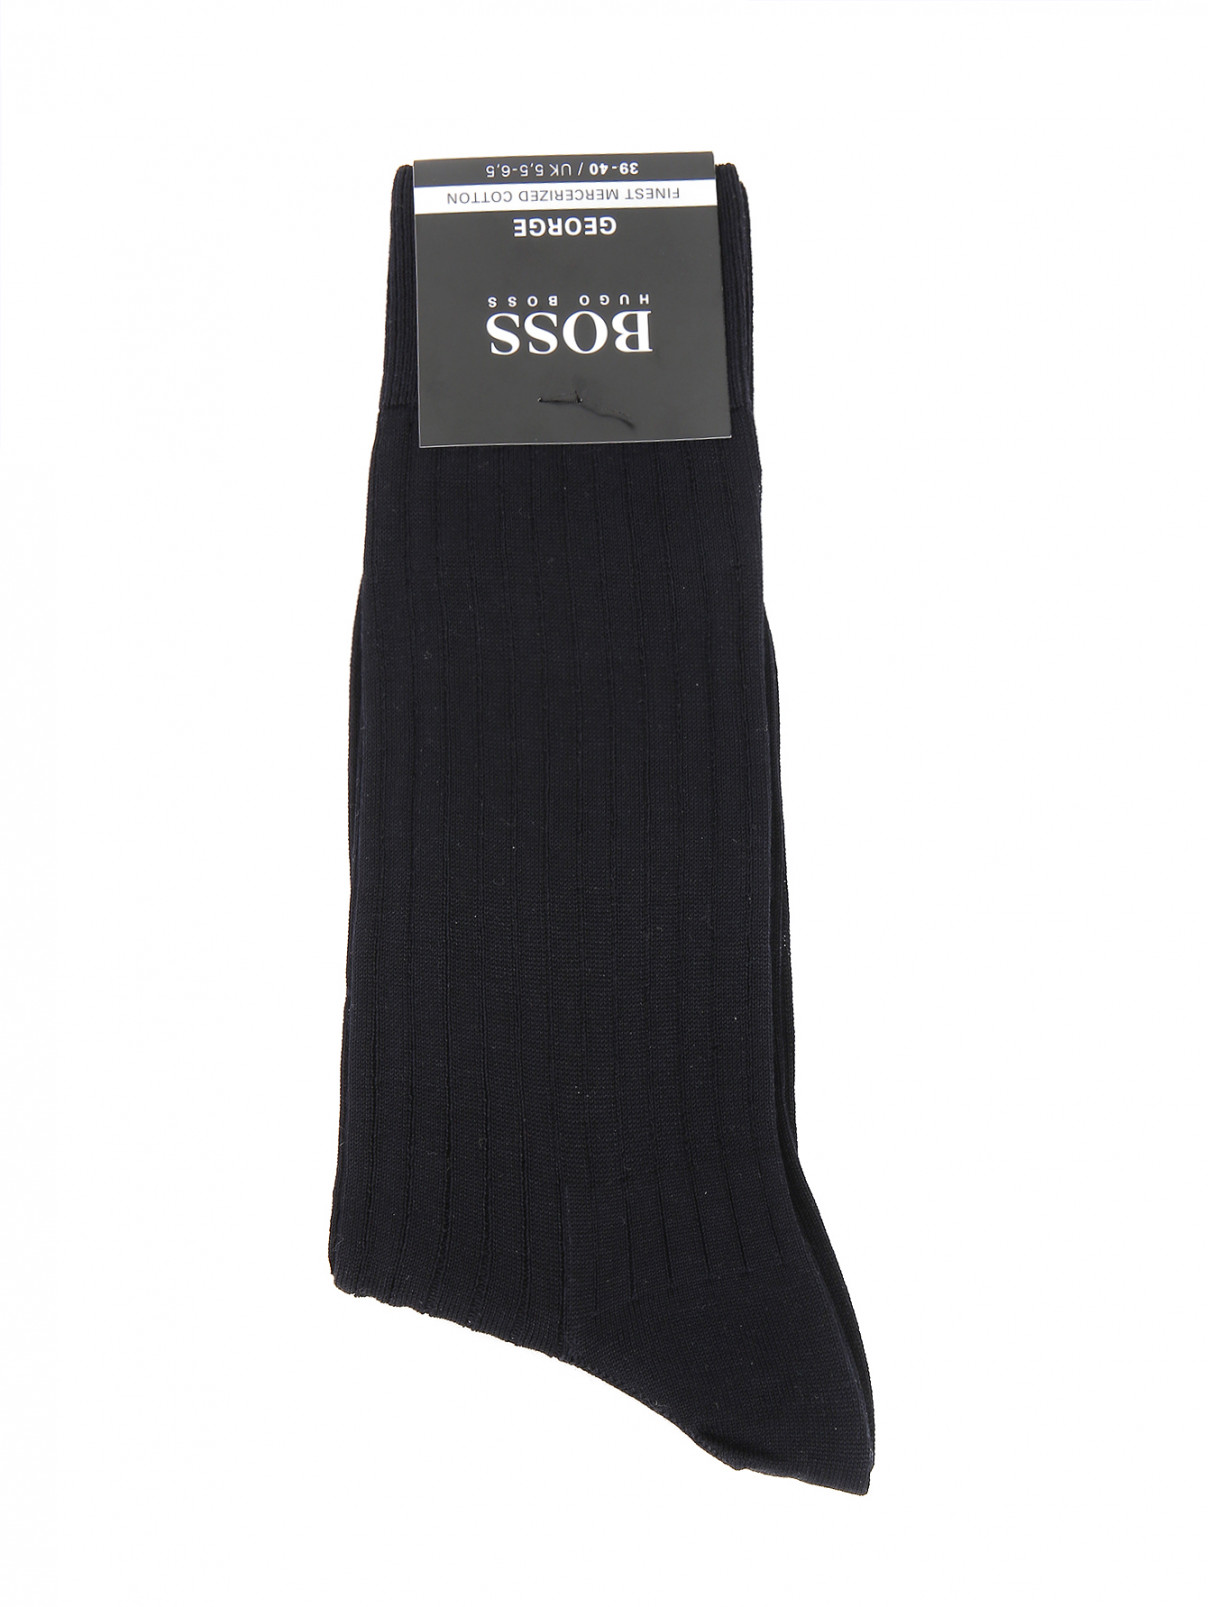 Носки из хлопка Hugo Boss  –  Общий вид  – Цвет:  Черный